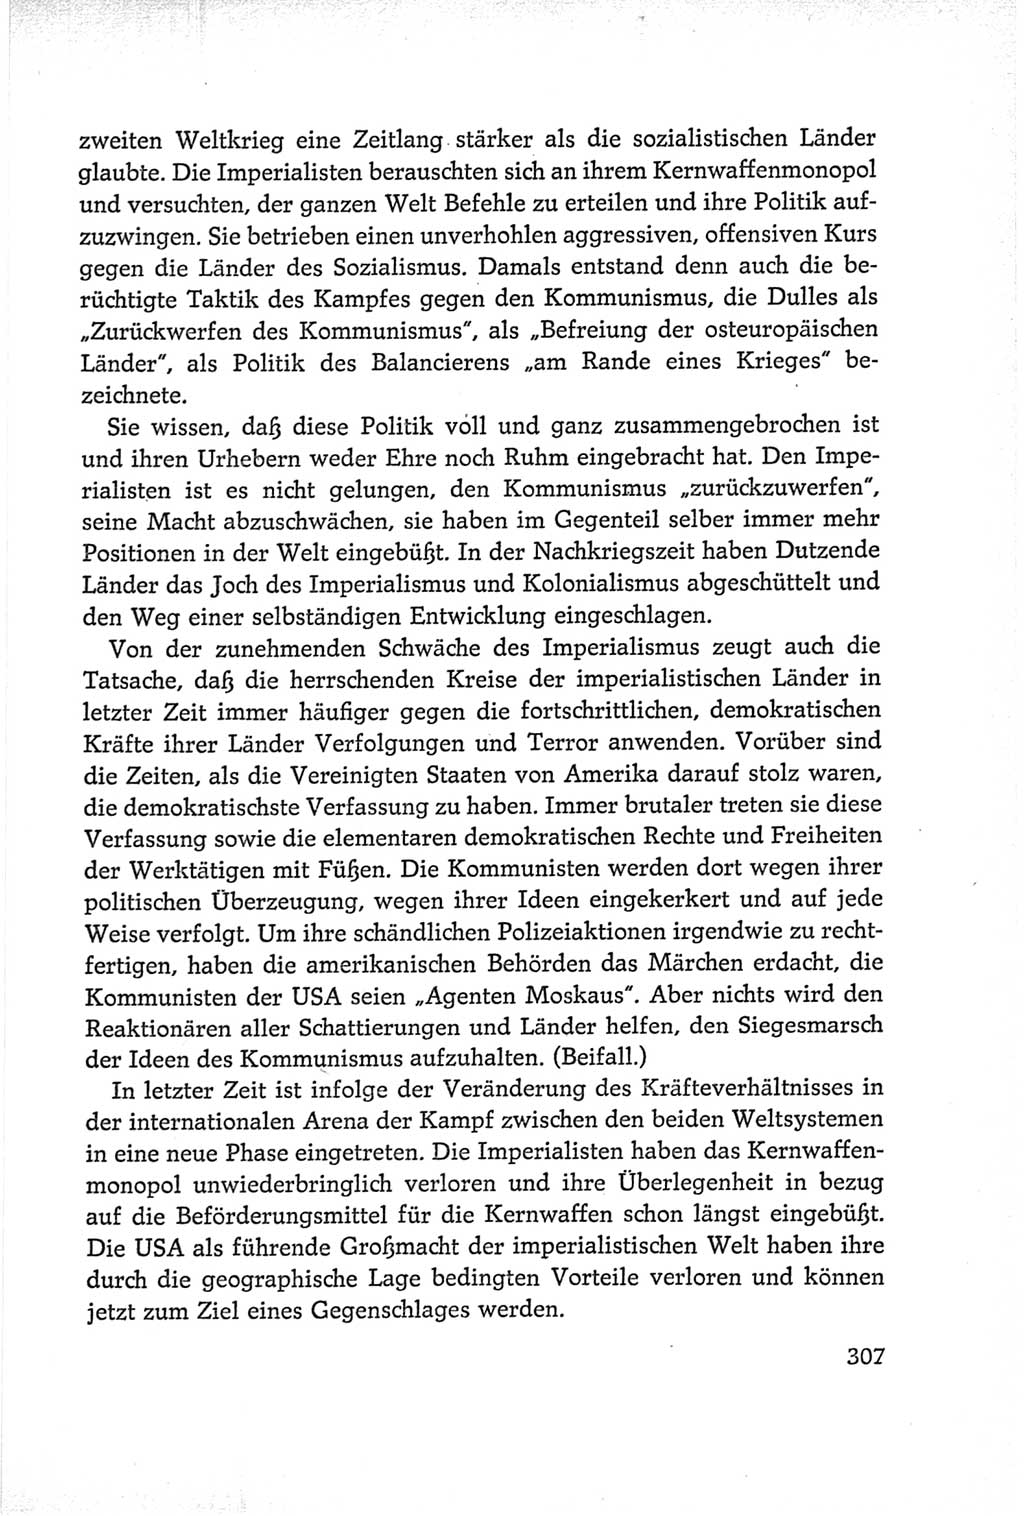 Protokoll der Verhandlungen des Ⅵ. Parteitages der Sozialistischen Einheitspartei Deutschlands (SED) [Deutsche Demokratische Republik (DDR)] 1963, Band Ⅰ, Seite 307 (Prot. Verh. Ⅵ. PT SED DDR 1963, Bd. Ⅰ, S. 307)